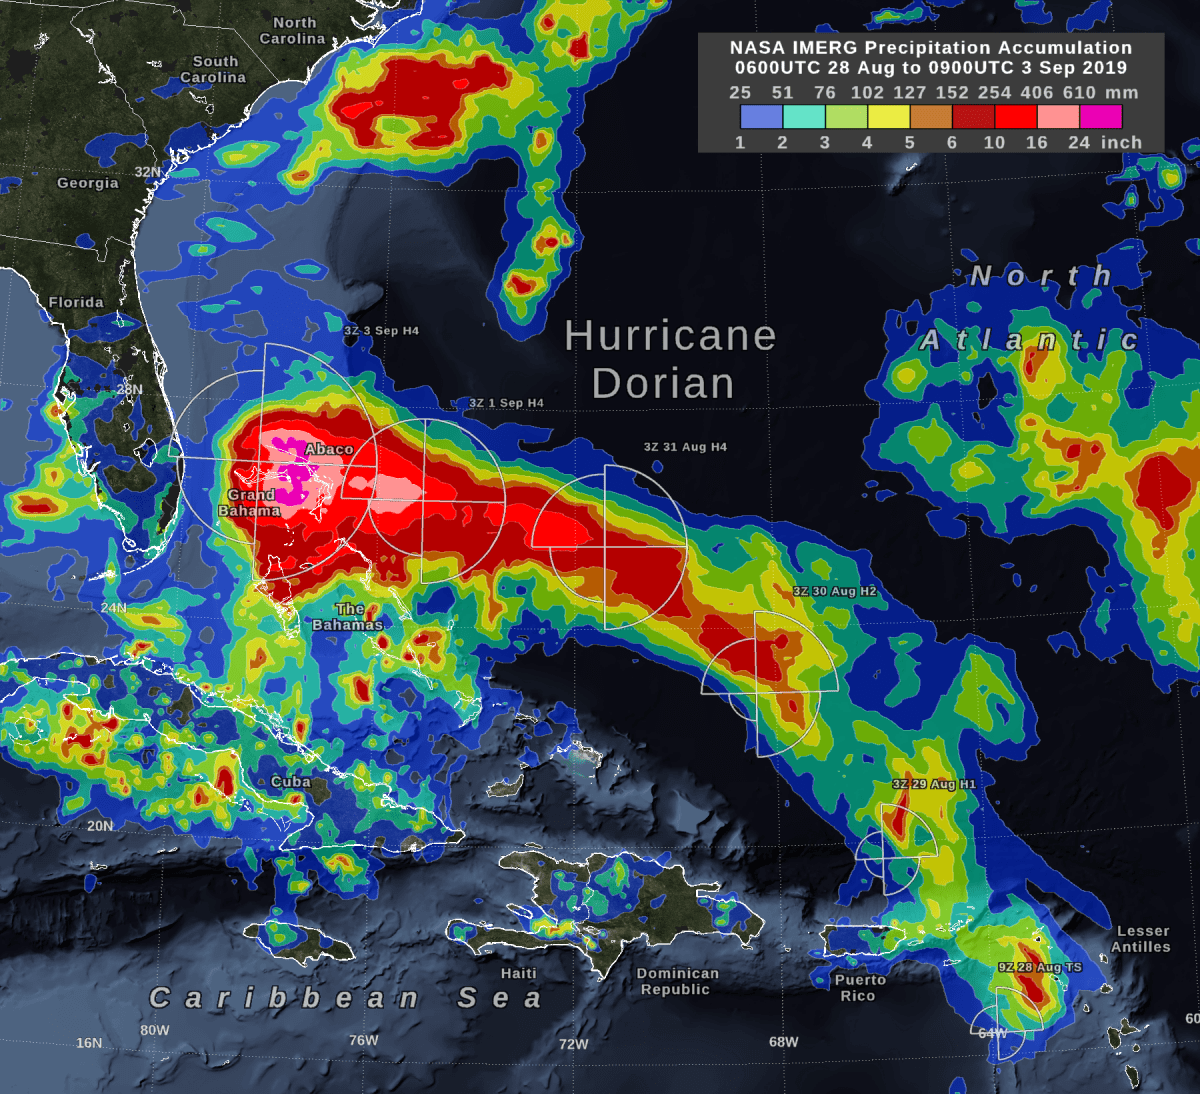 NASA's IMERG Estimates Hurricane Dorian's Rain